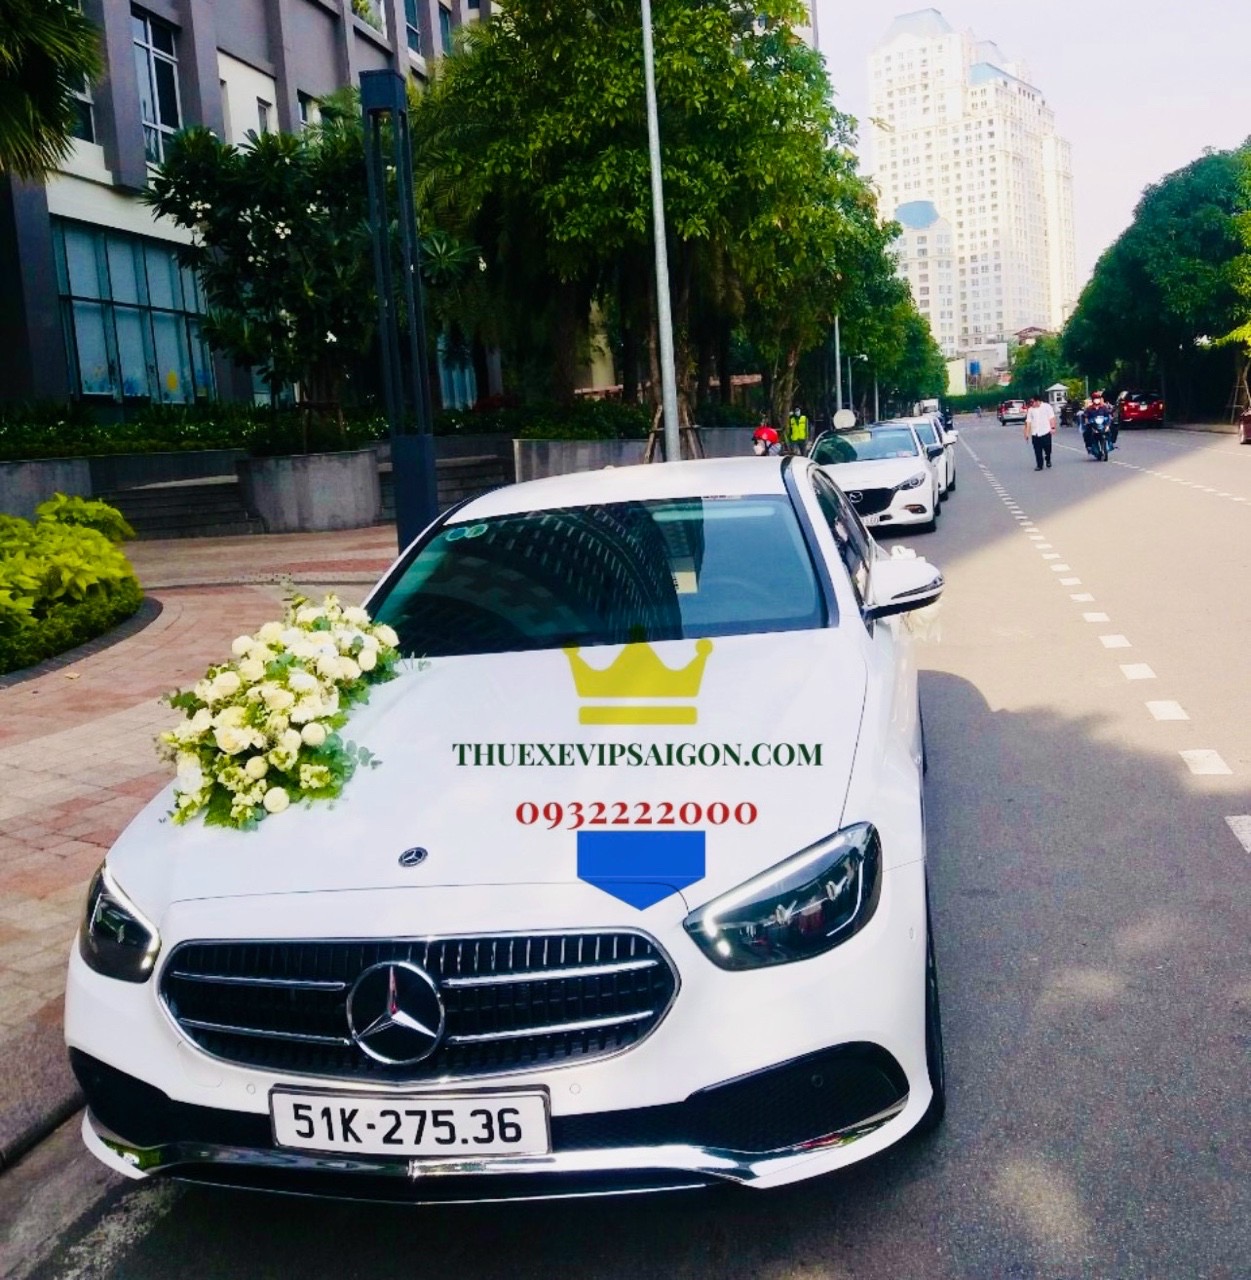 Thuexevipsaigon cho thuê xe hoa Mercedes ngày 11/6/2022